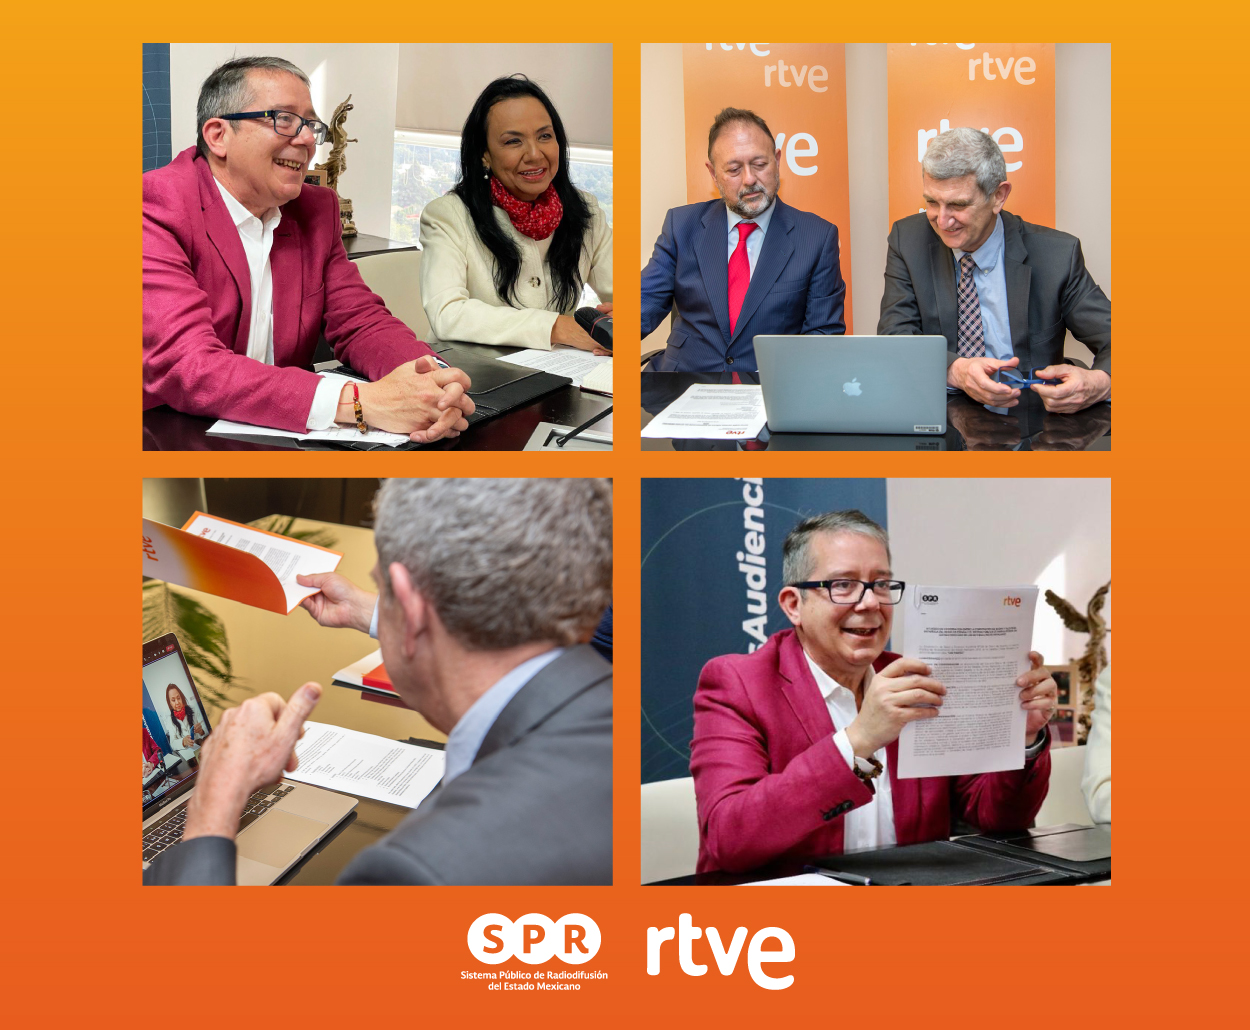 El SPR firma un acuerdo de cooperación con la Corporación de Radio y Televisión Española (RTVE)